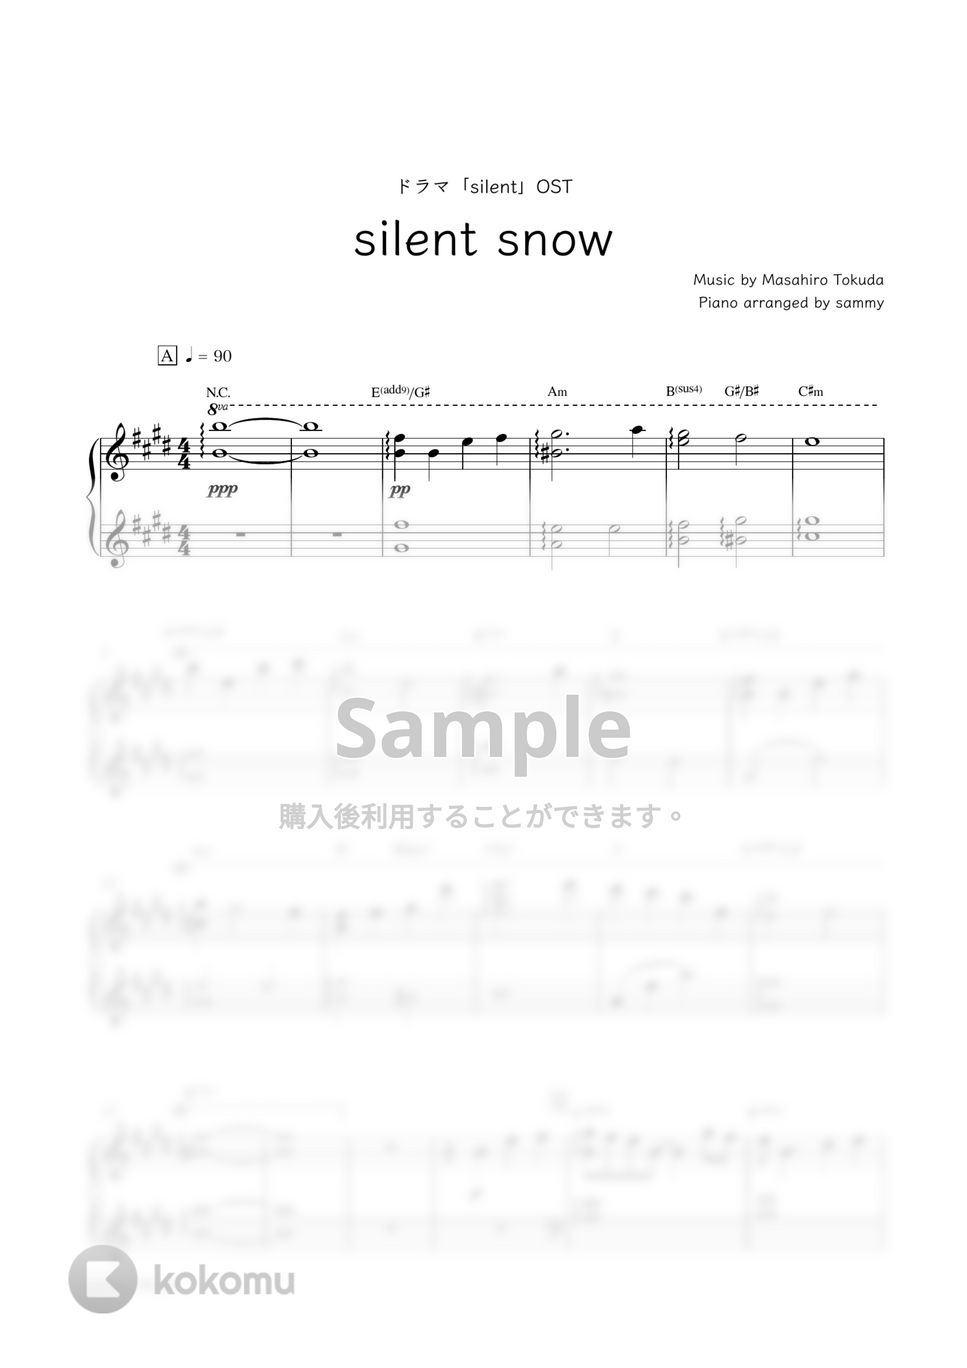 ドラマ『silent』OST - silent snow by sammy